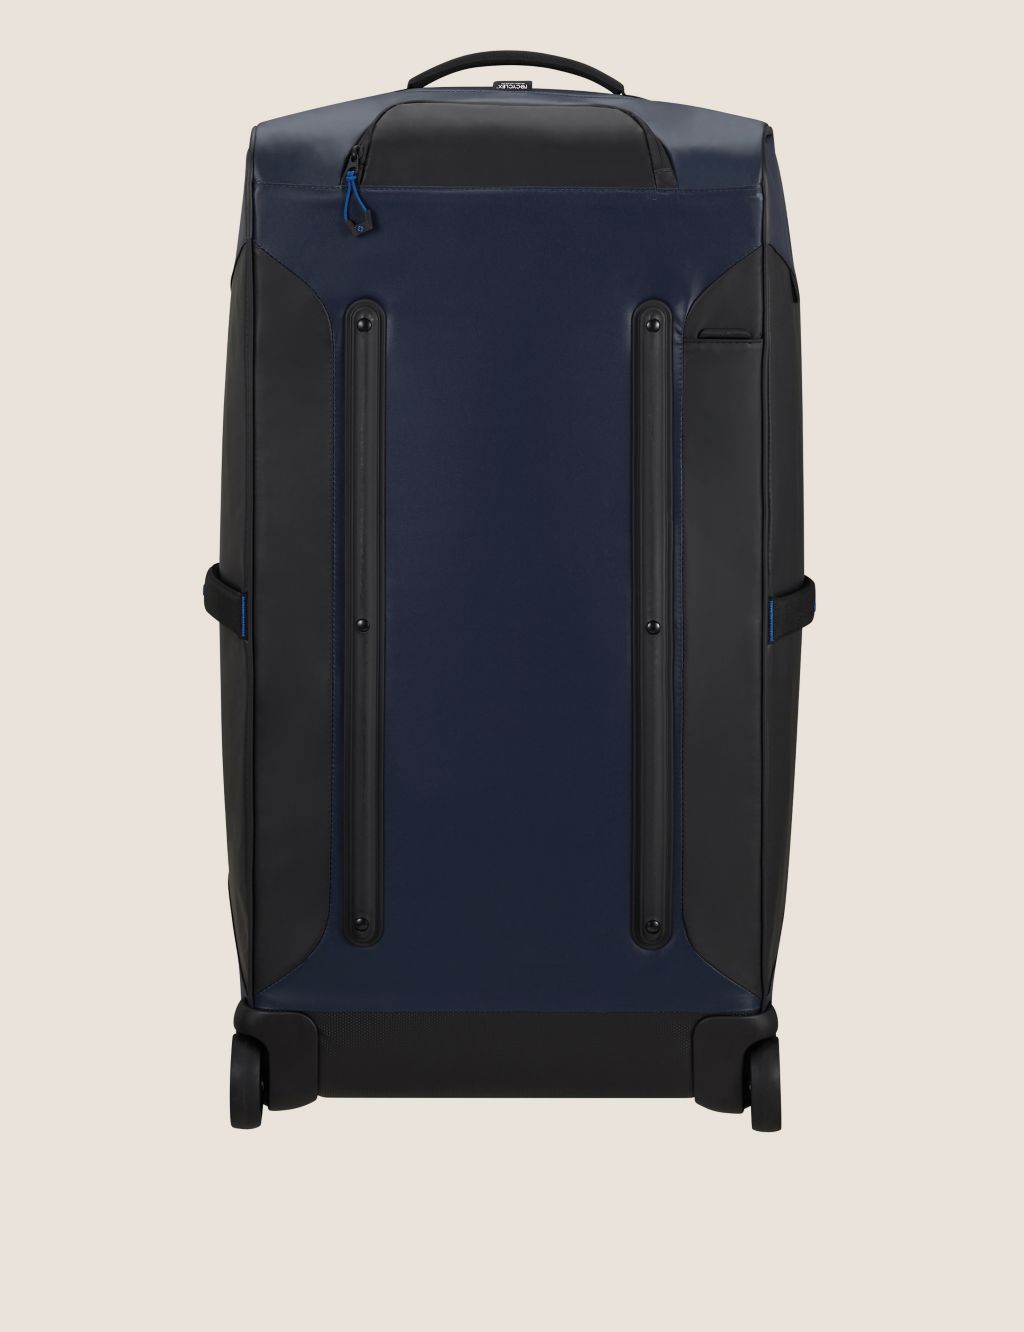 Ecodiver 2 Wheel Soft Large Suitcase image 2